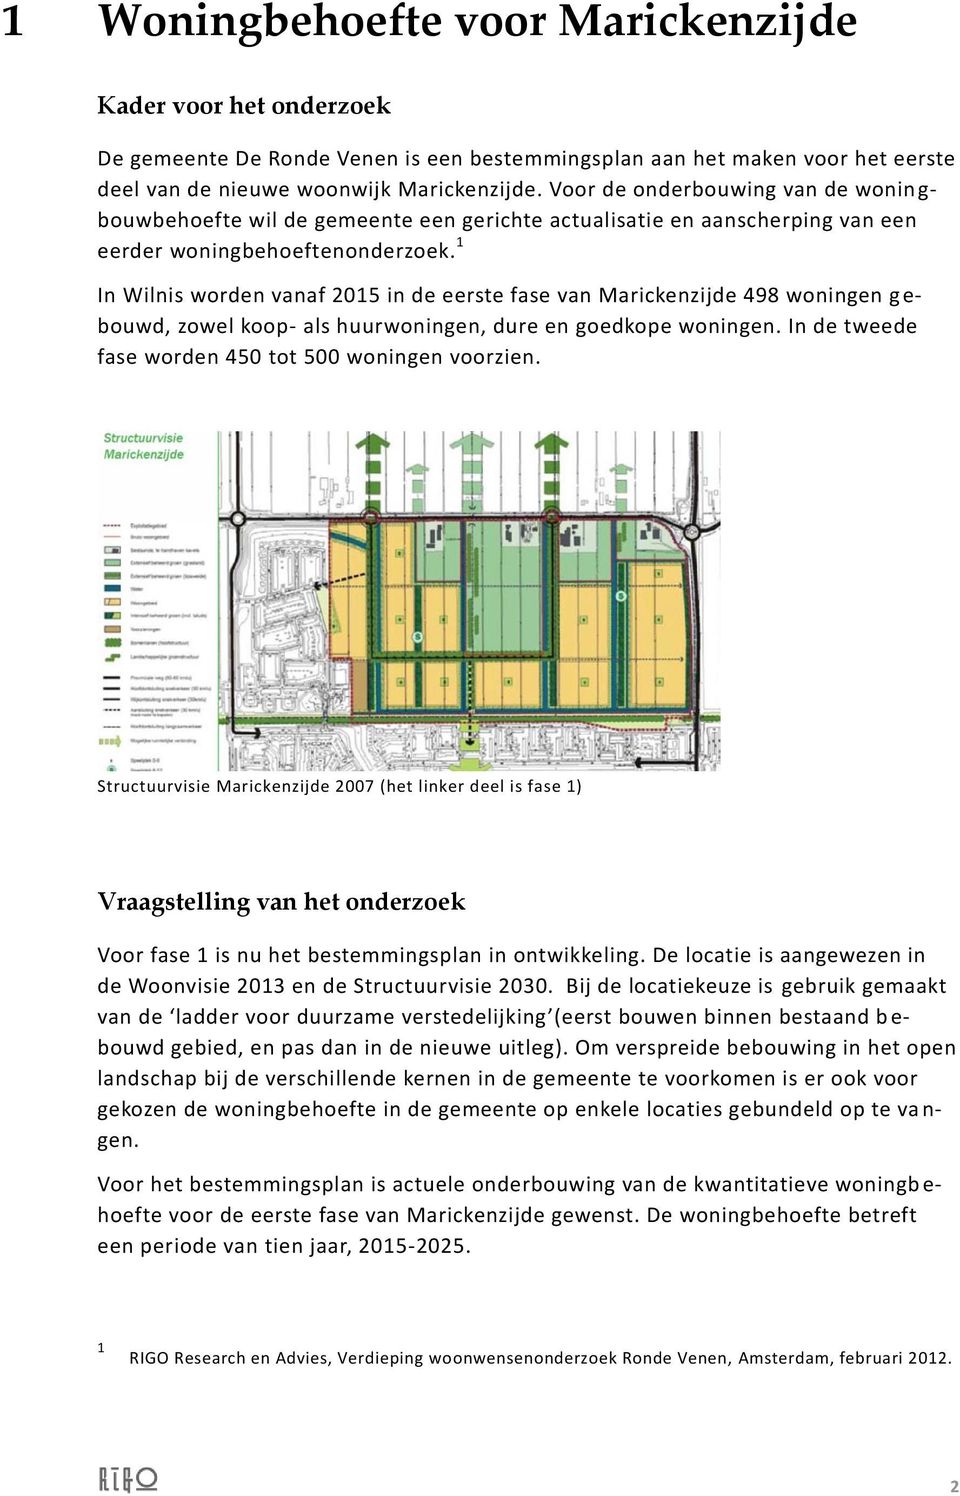 1 In Wilnis worden vanaf 2015 in de eerste fase van Marickenzijde 498 woningen g e- bouwd, zowel koop- als huurwoningen, dure en goedkope woningen.